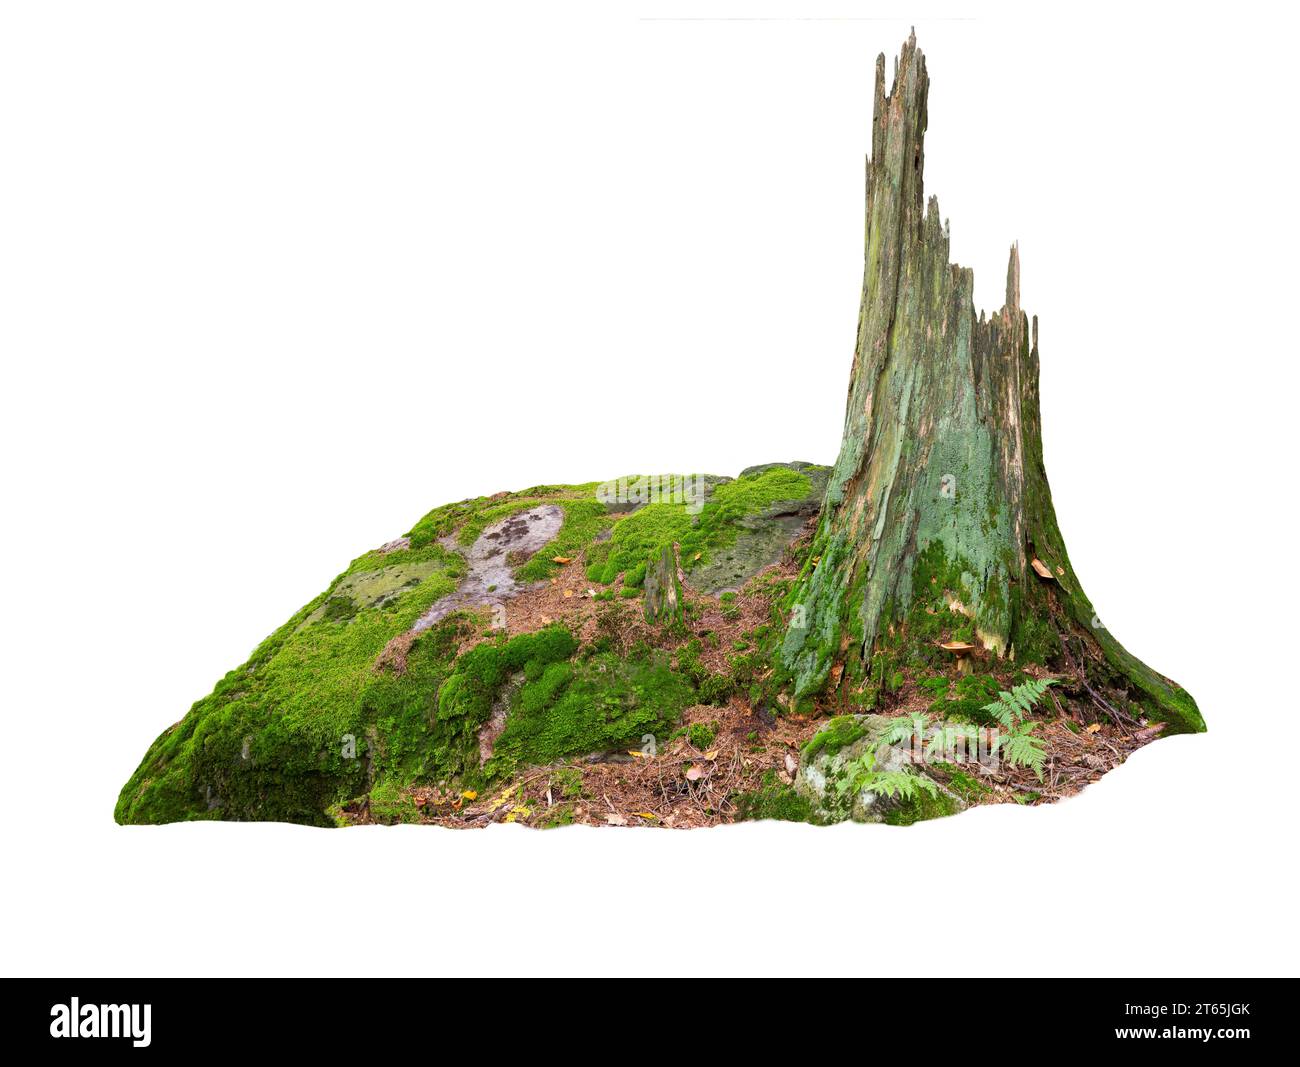 Alter Baumstamm auf Steinen in Moos isoliert auf weißem Hintergrund Stockfoto